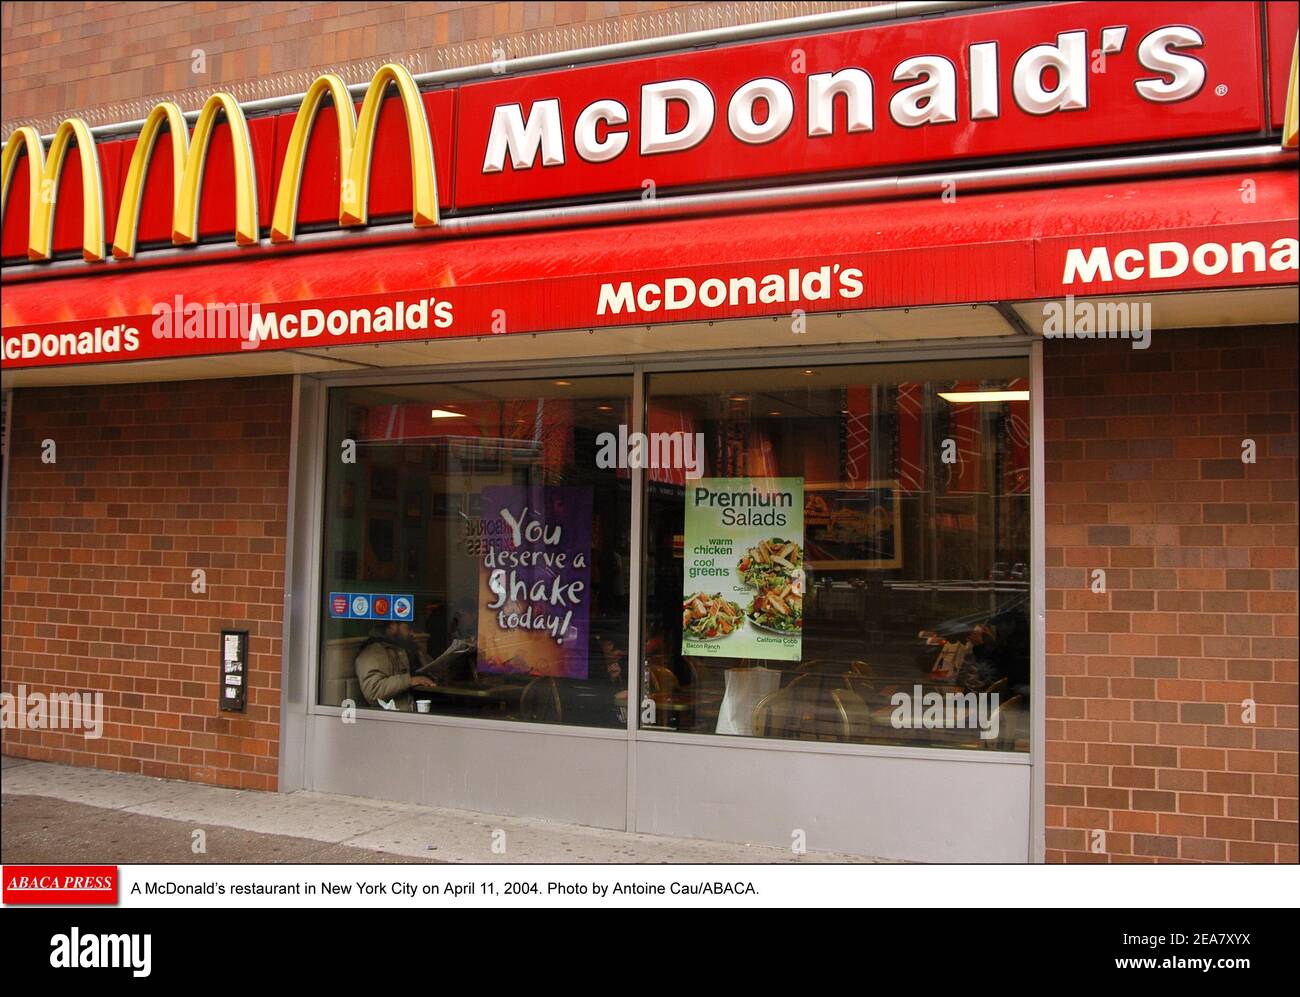 Un restaurant McDonald's à New York le 11 avril 2004. Photo par Antoine Cau/ABACA. Banque D'Images